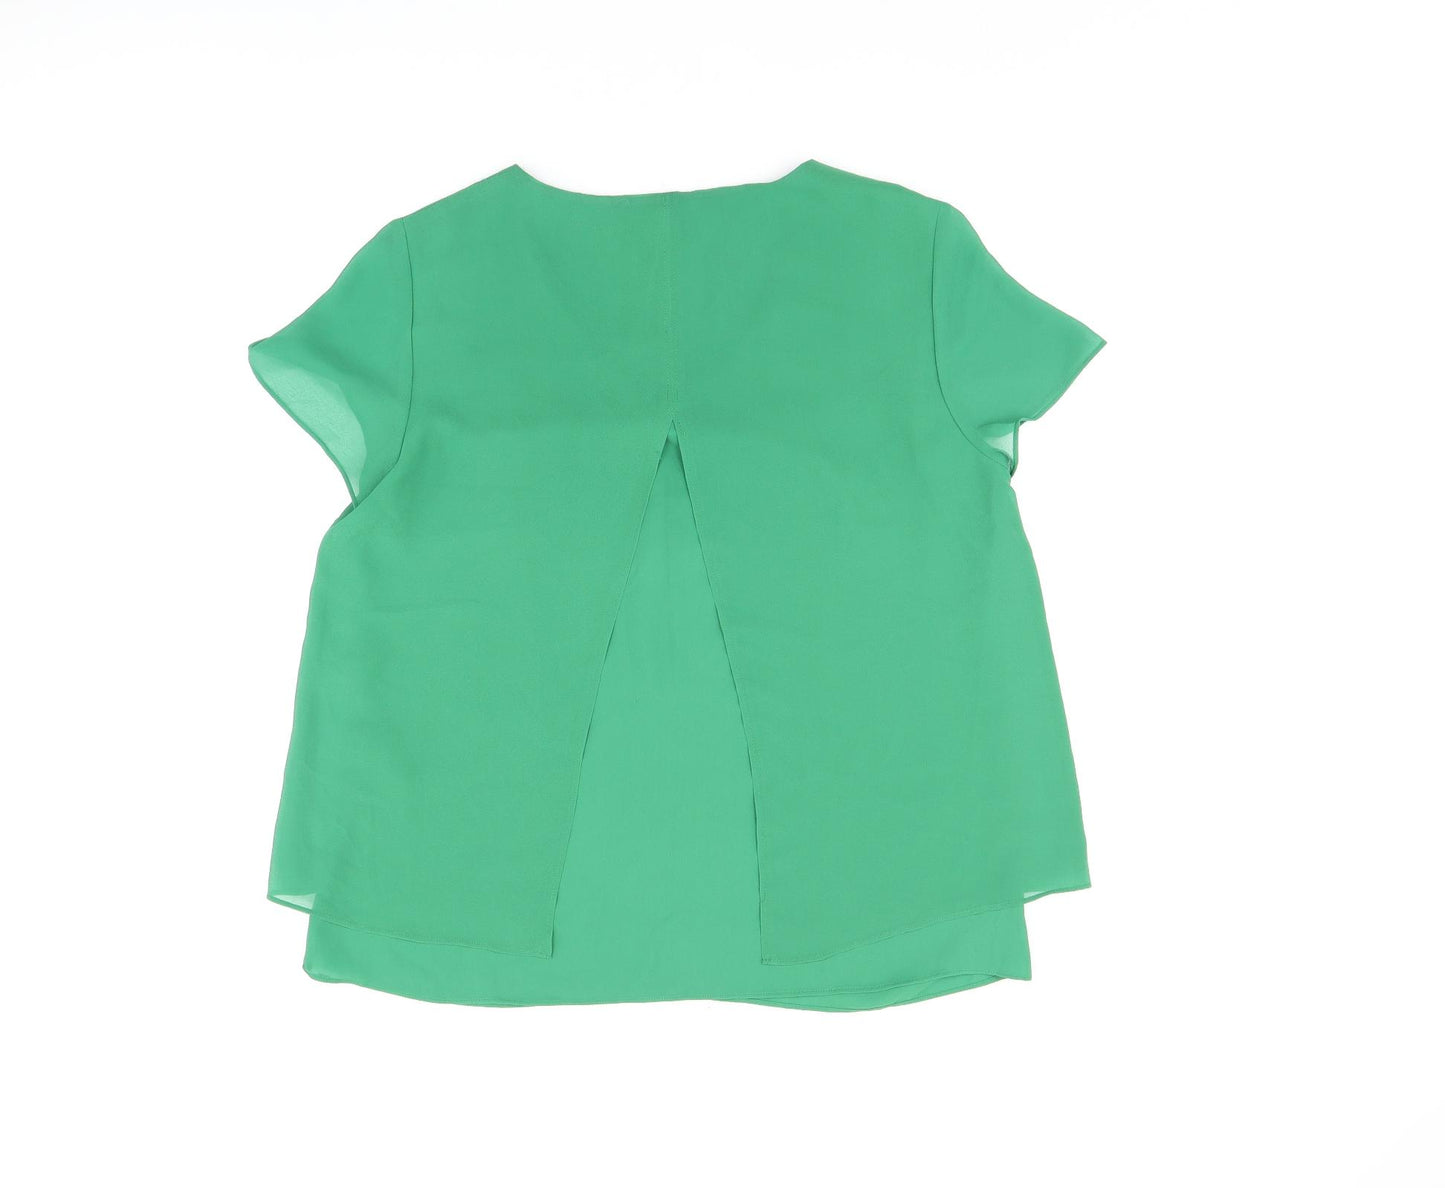 s.Oliver Womens Green Polyester Basic Blouse Size 12 V-Neck